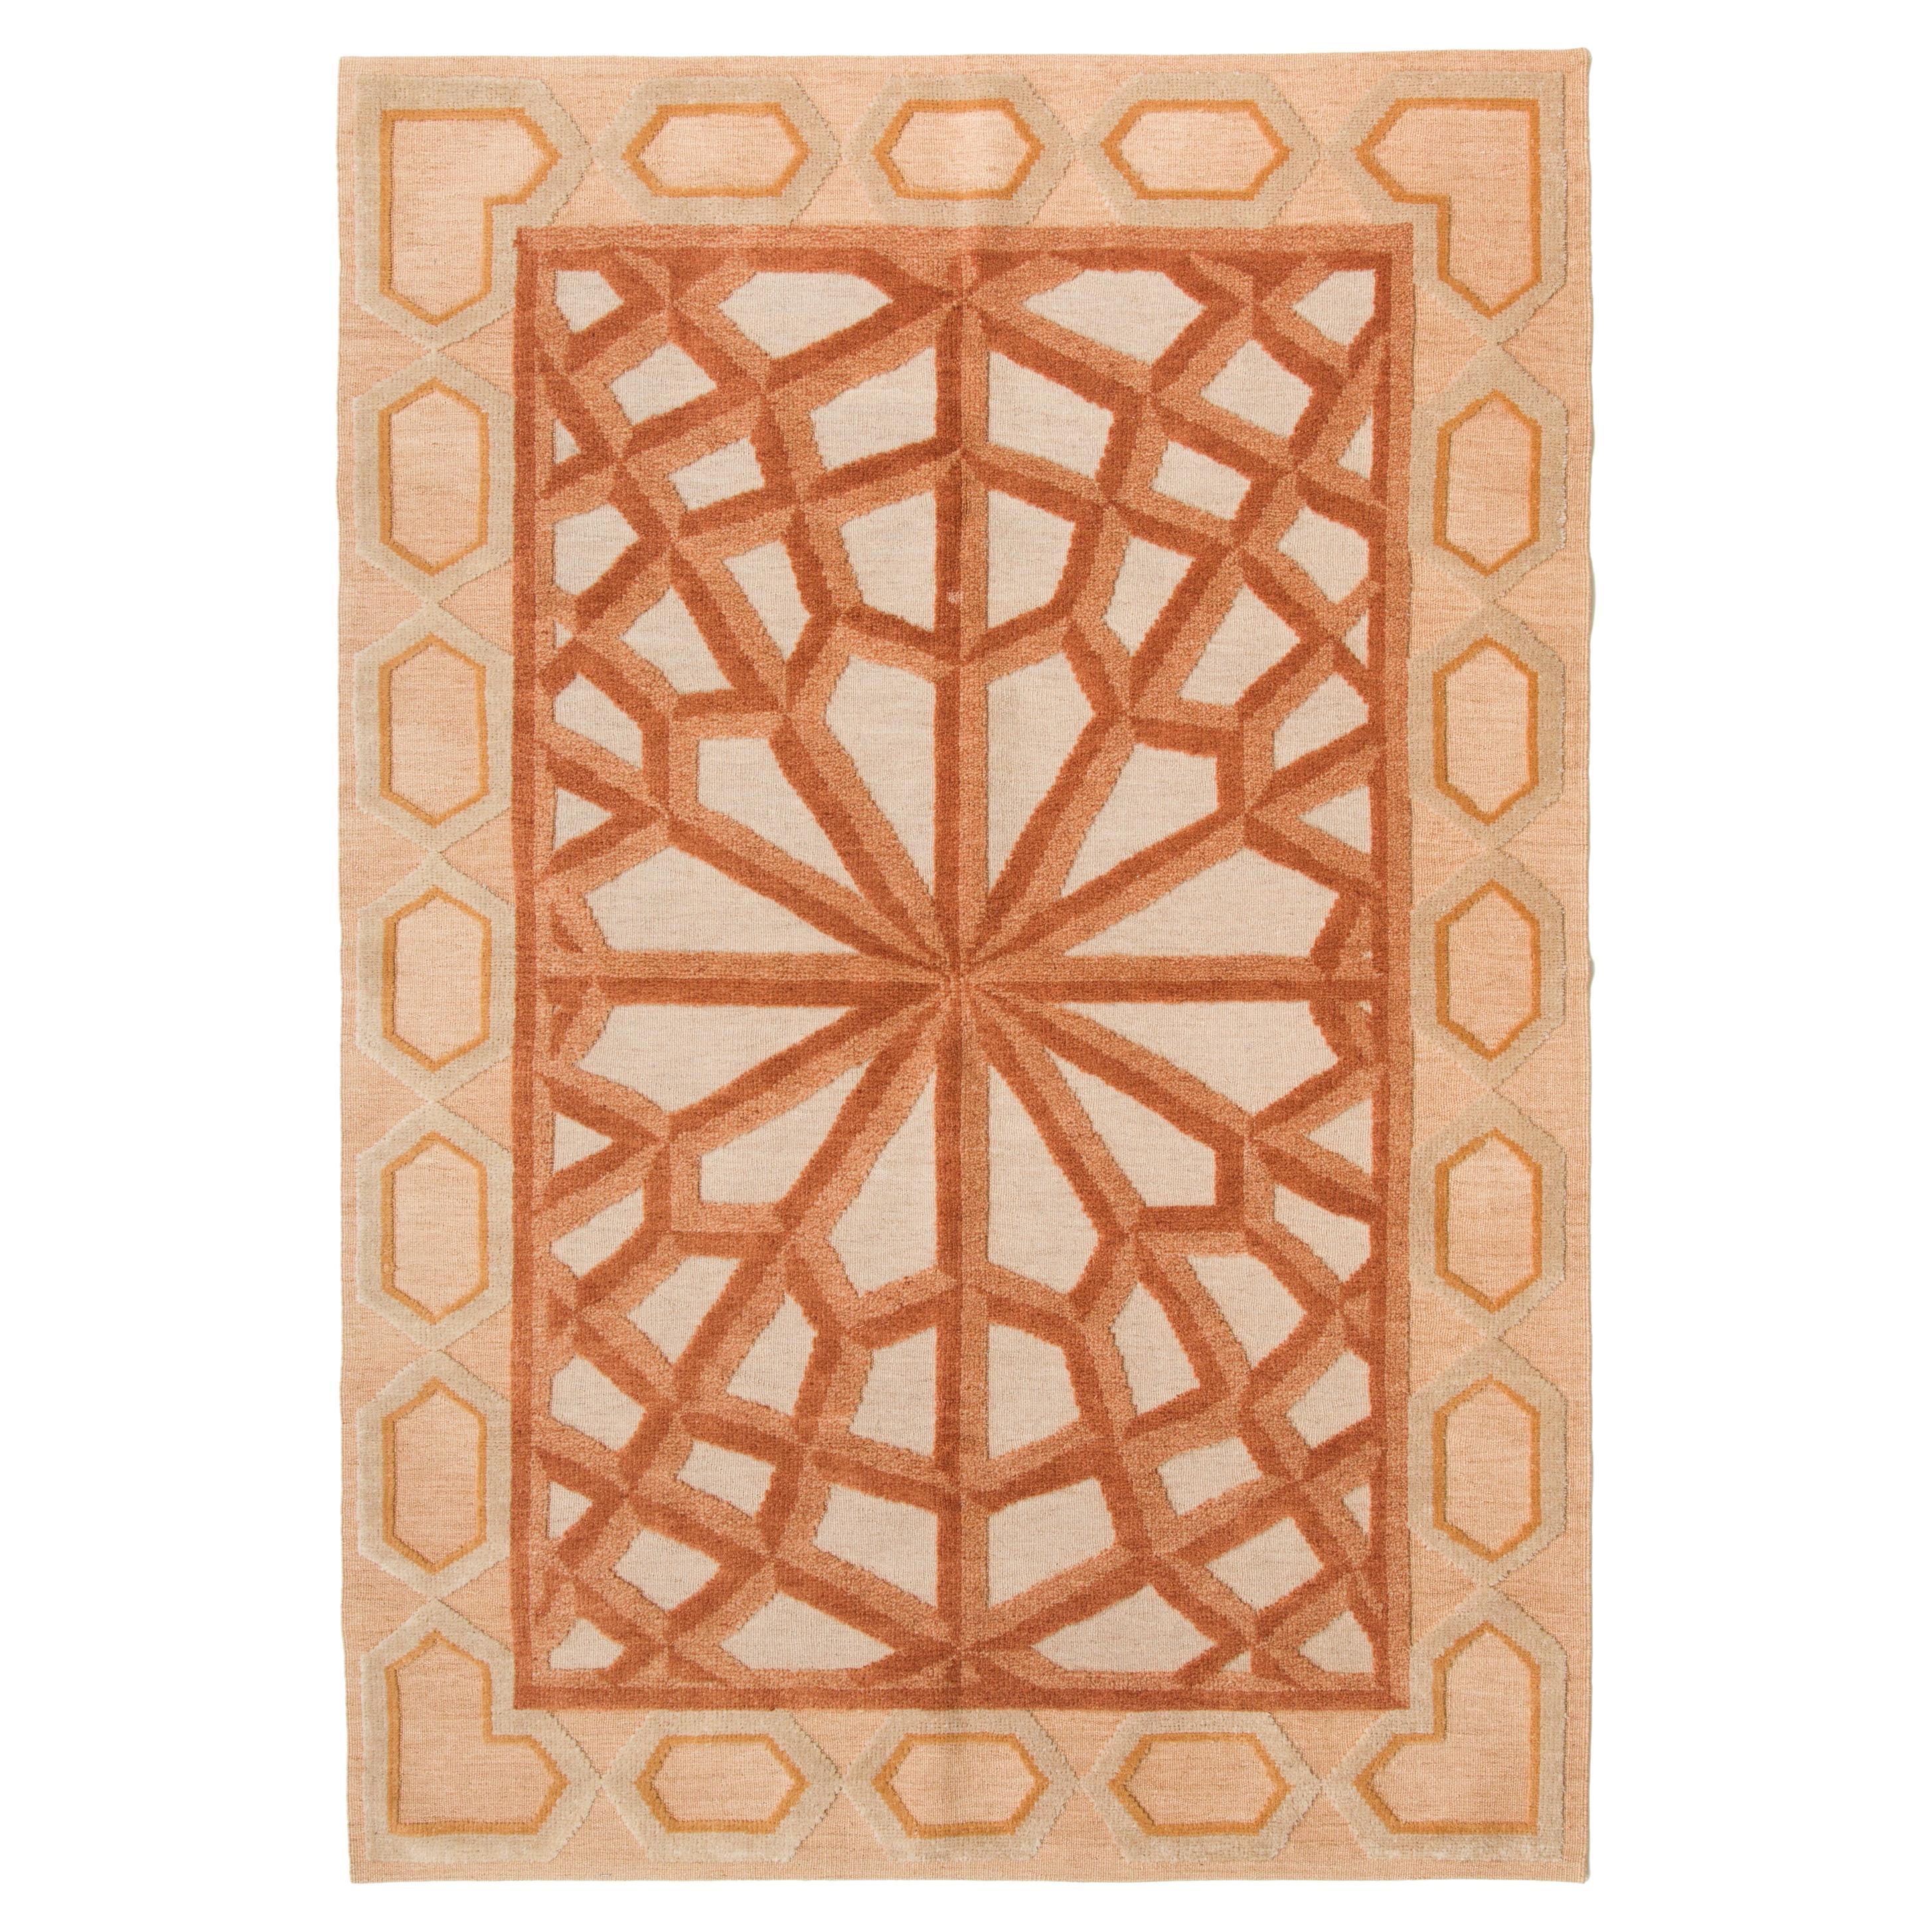 Tapis Kilim moderne tissé à plat à motifs géométriques turcs de la collection Ararat